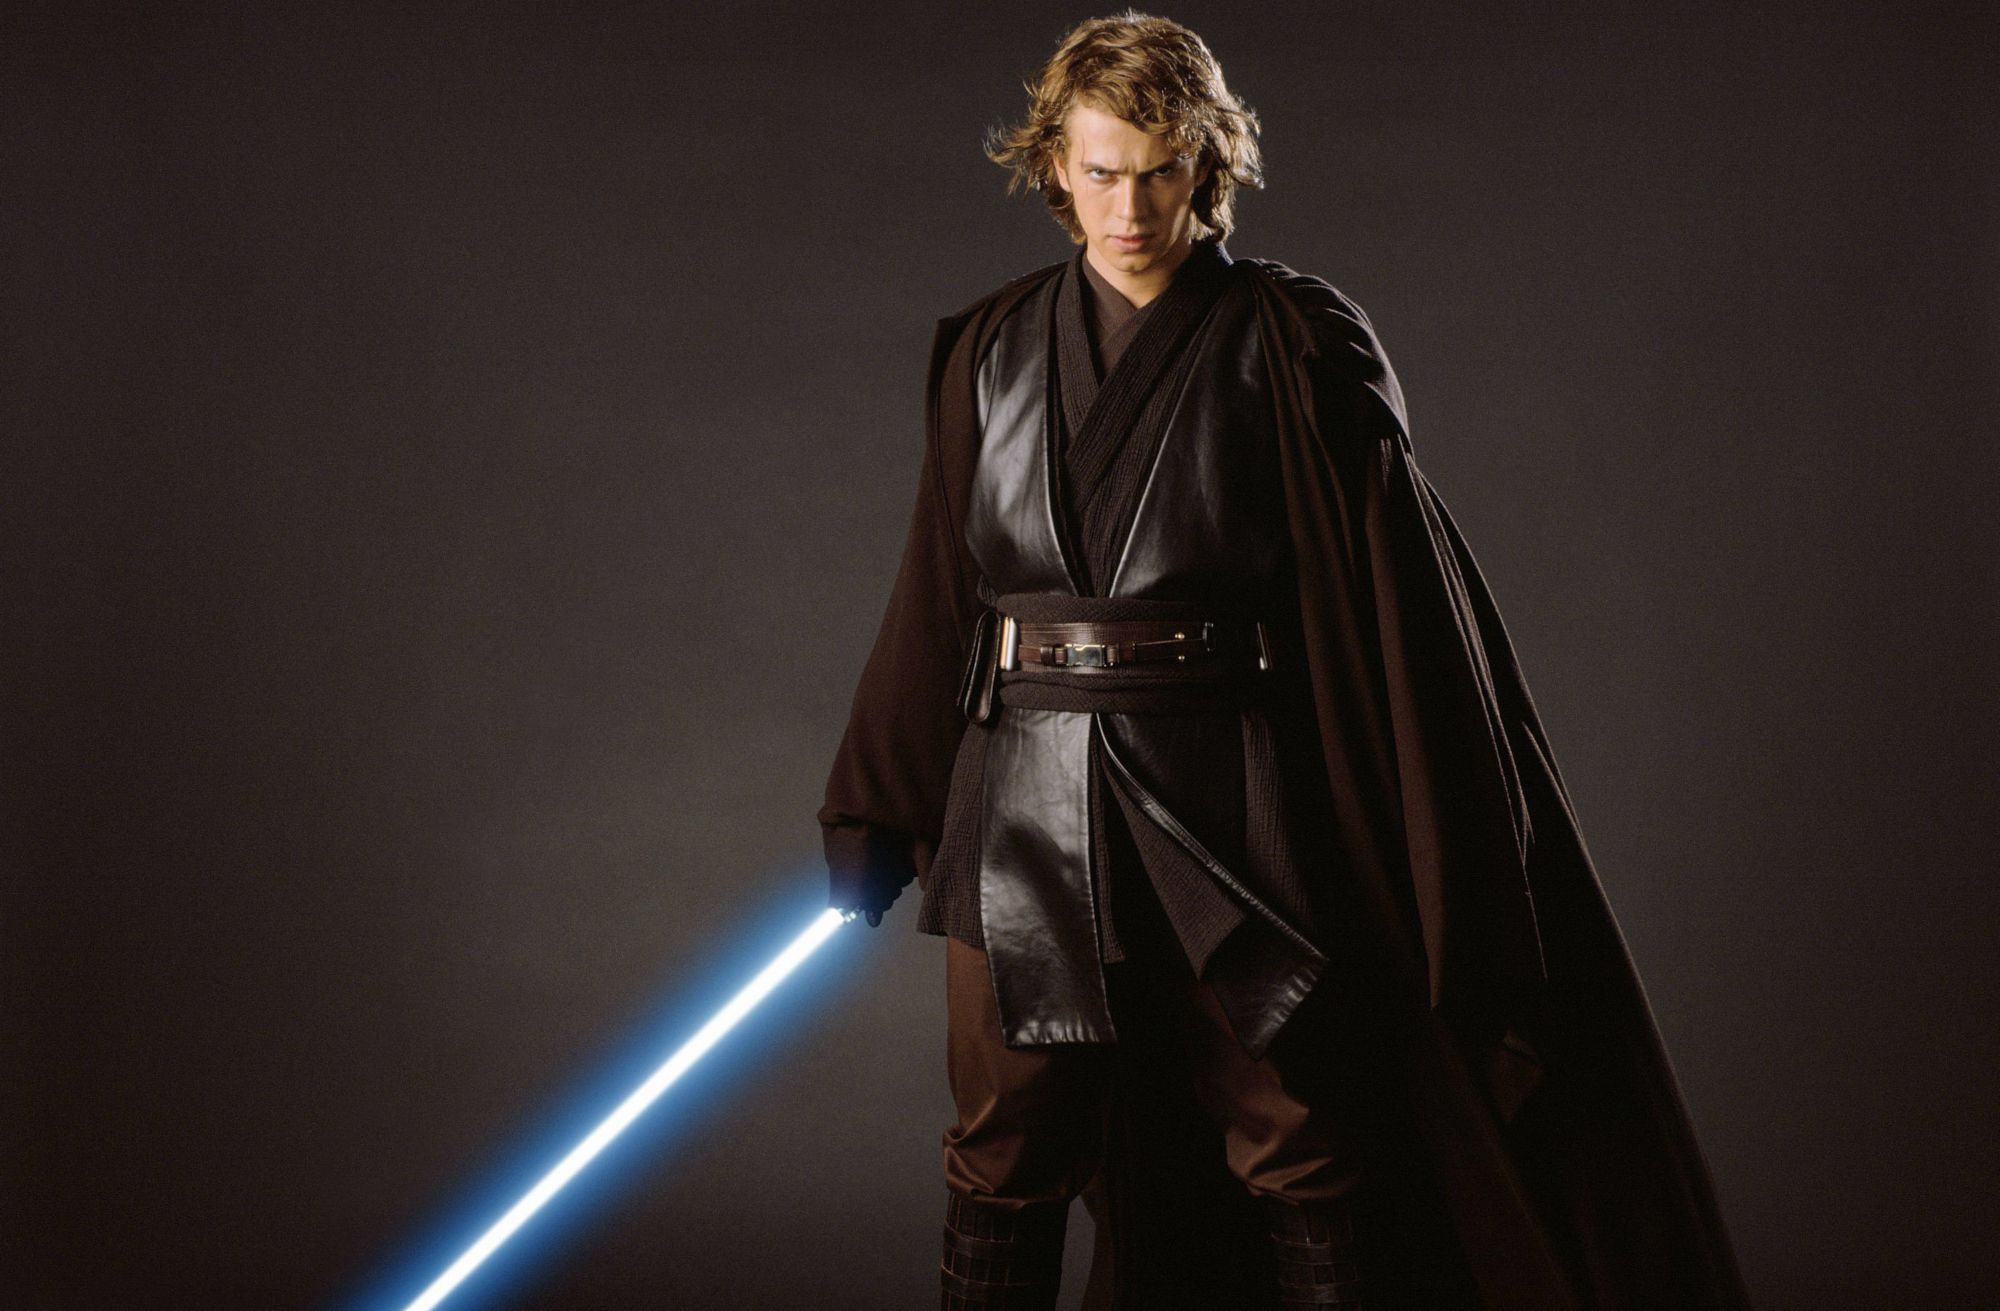 Movie Star Wars Episode III Revenge of the Sith Star Wars Anakin Skywalker Hayden Christensen HD Wallpaper Background Image